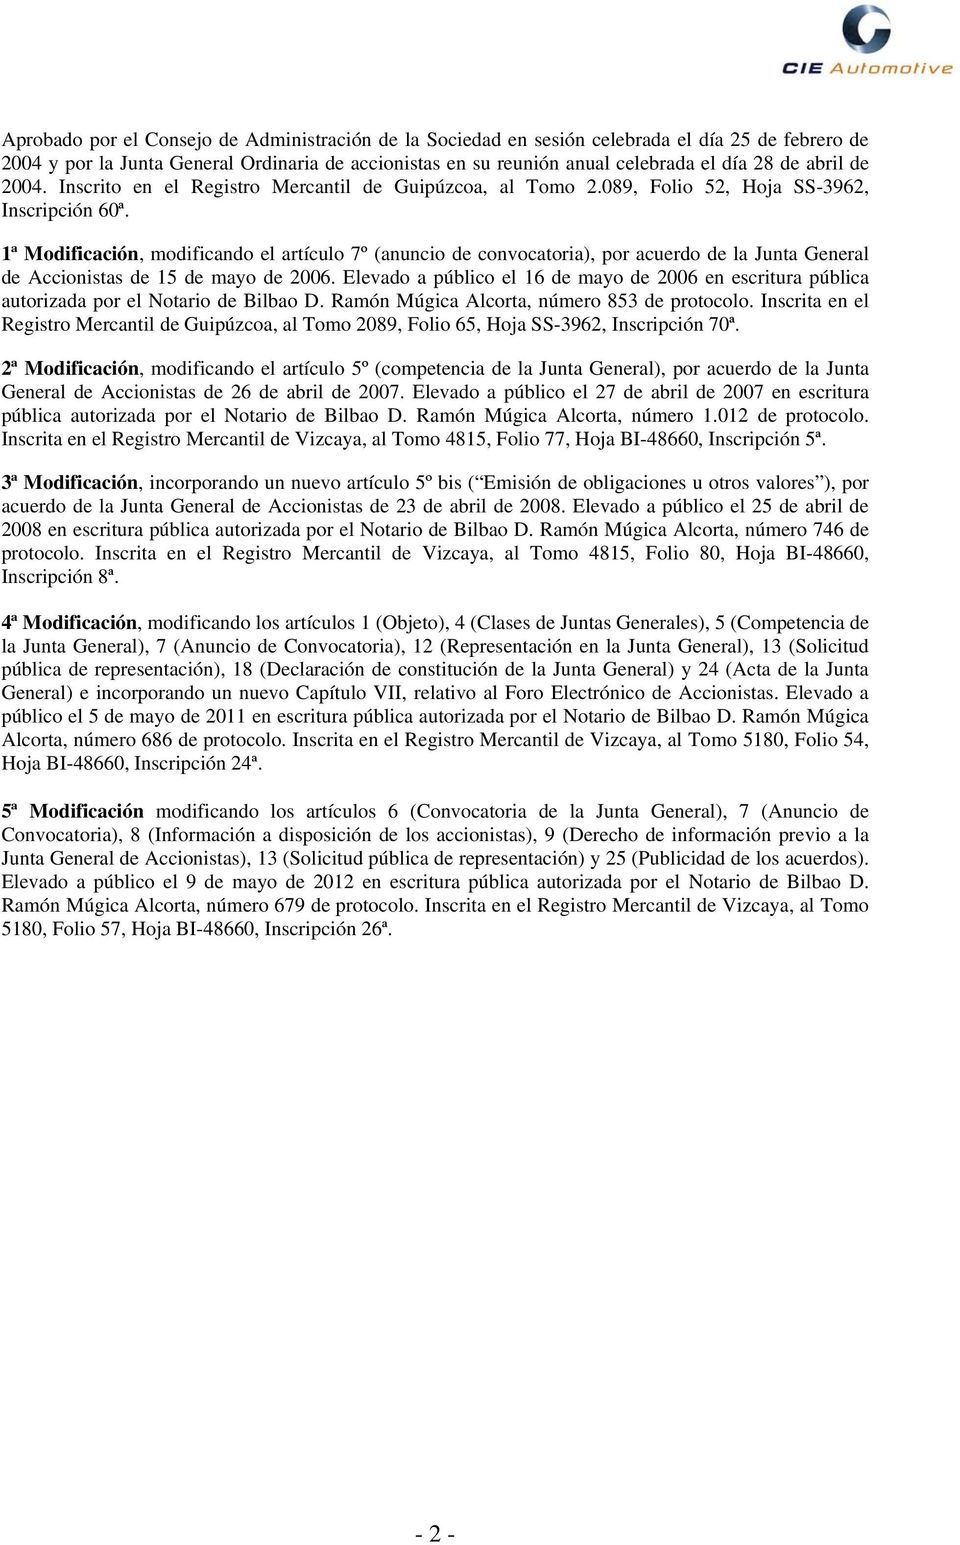 1ª Modificación, modificando el artículo 7º (anuncio de convocatoria), por acuerdo de la Junta General de Accionistas de 15 de mayo de 2006.